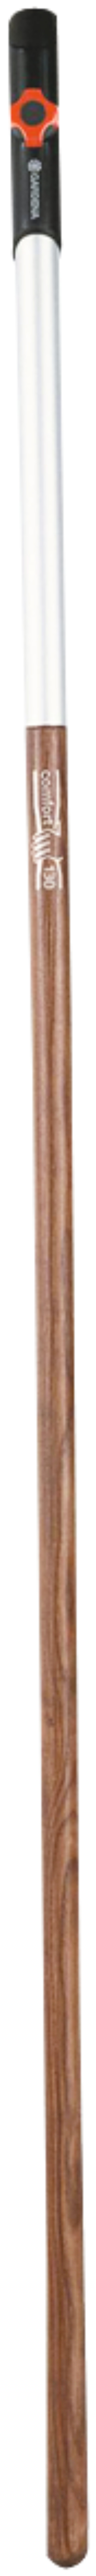 GARDENA Combisystem-Holzstiel 130 cm